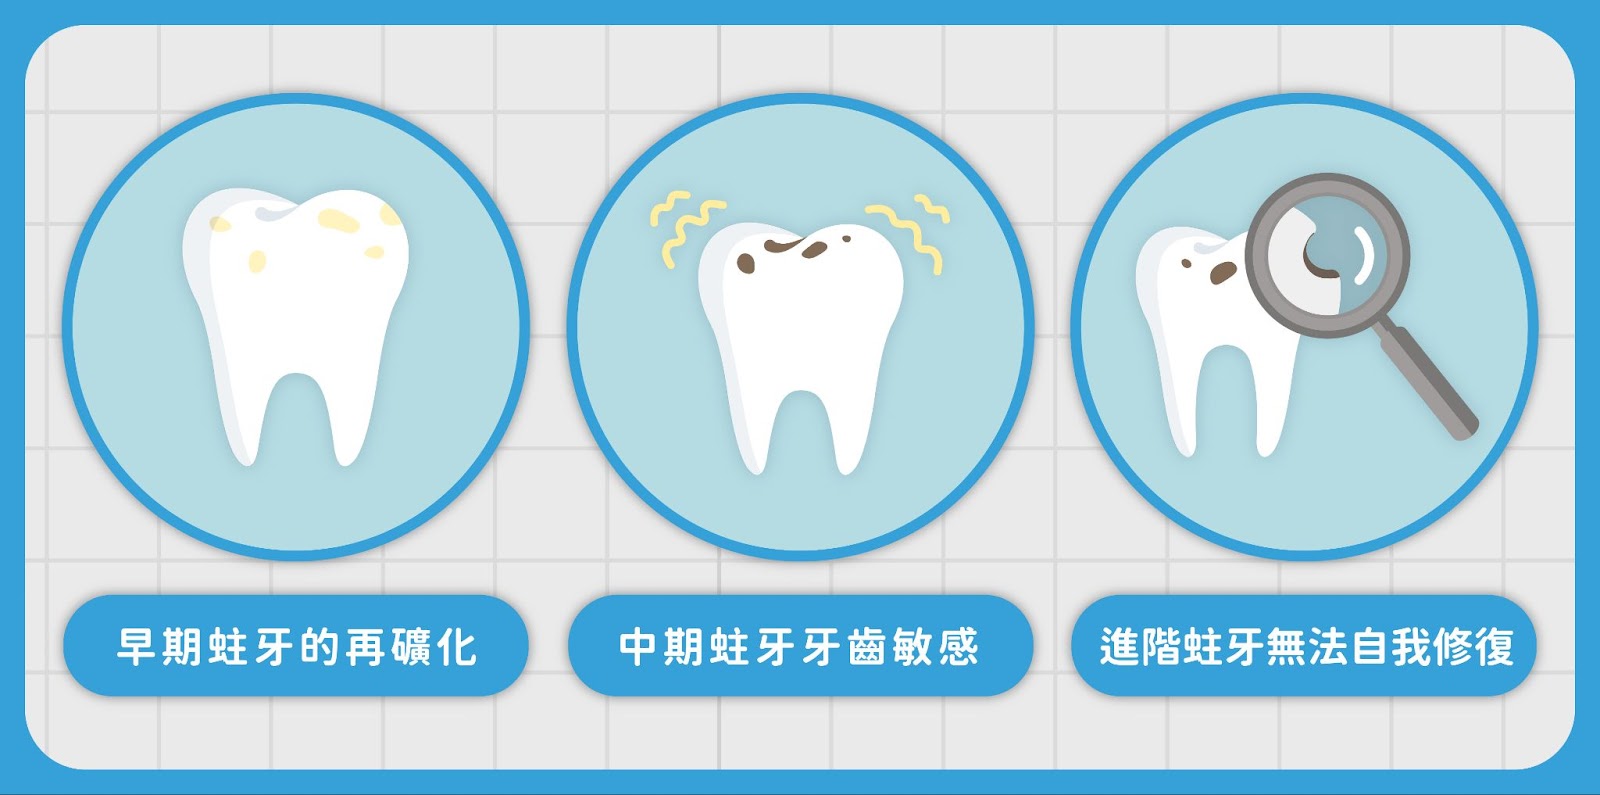 牙齒具有一定的自我修復能力，稱為再礦化。這是一種自然過程